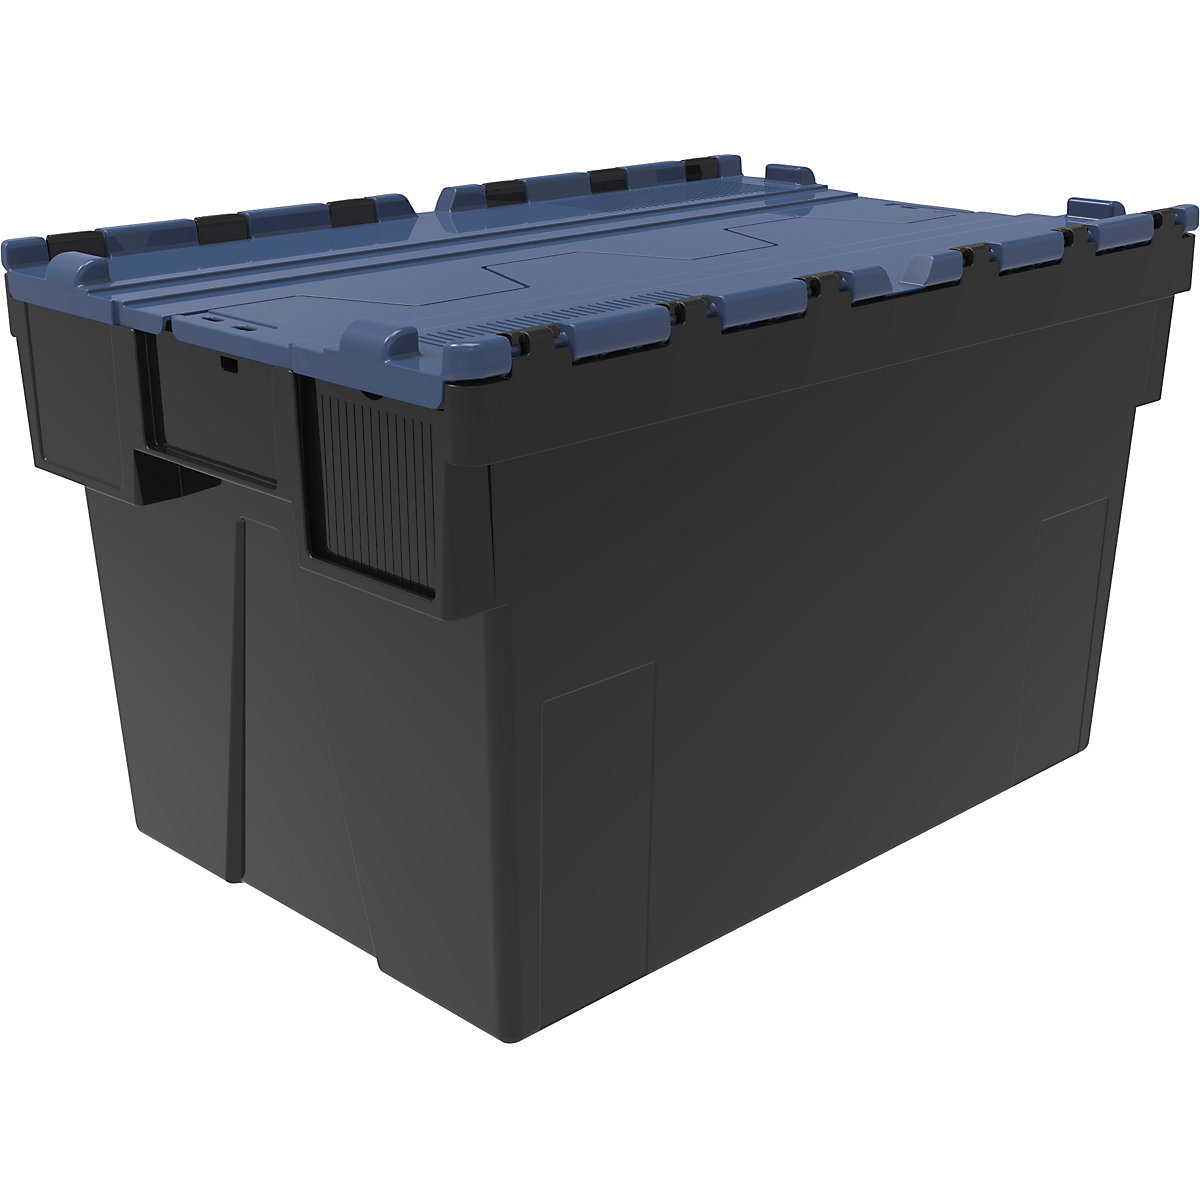 Többször használható rakásolható tároló, h x szé x ma 600 x 400 x 365 mm, cs. e. 5 db, fekete színben, kék fedéllel